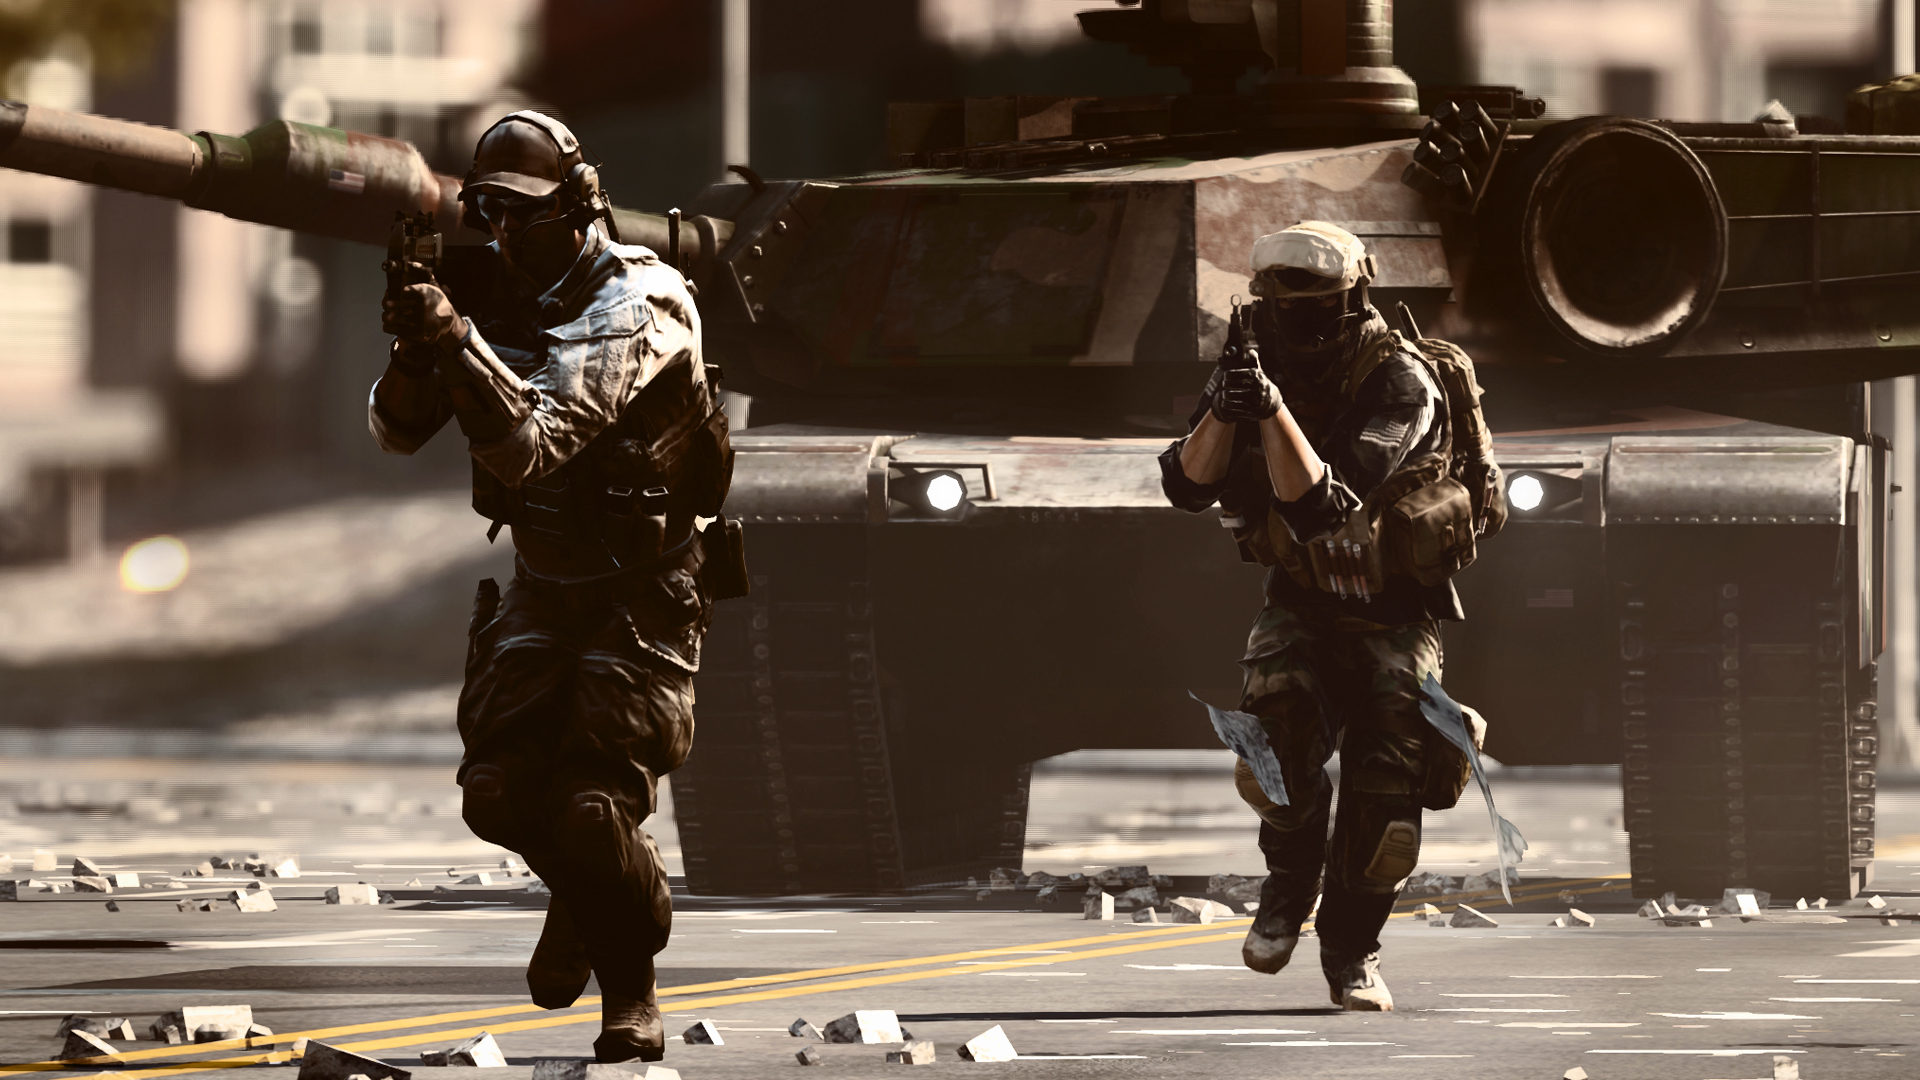 Battlefield 4 PS4 update features 33 fixes, tweaks, and improvements -  GameSpot